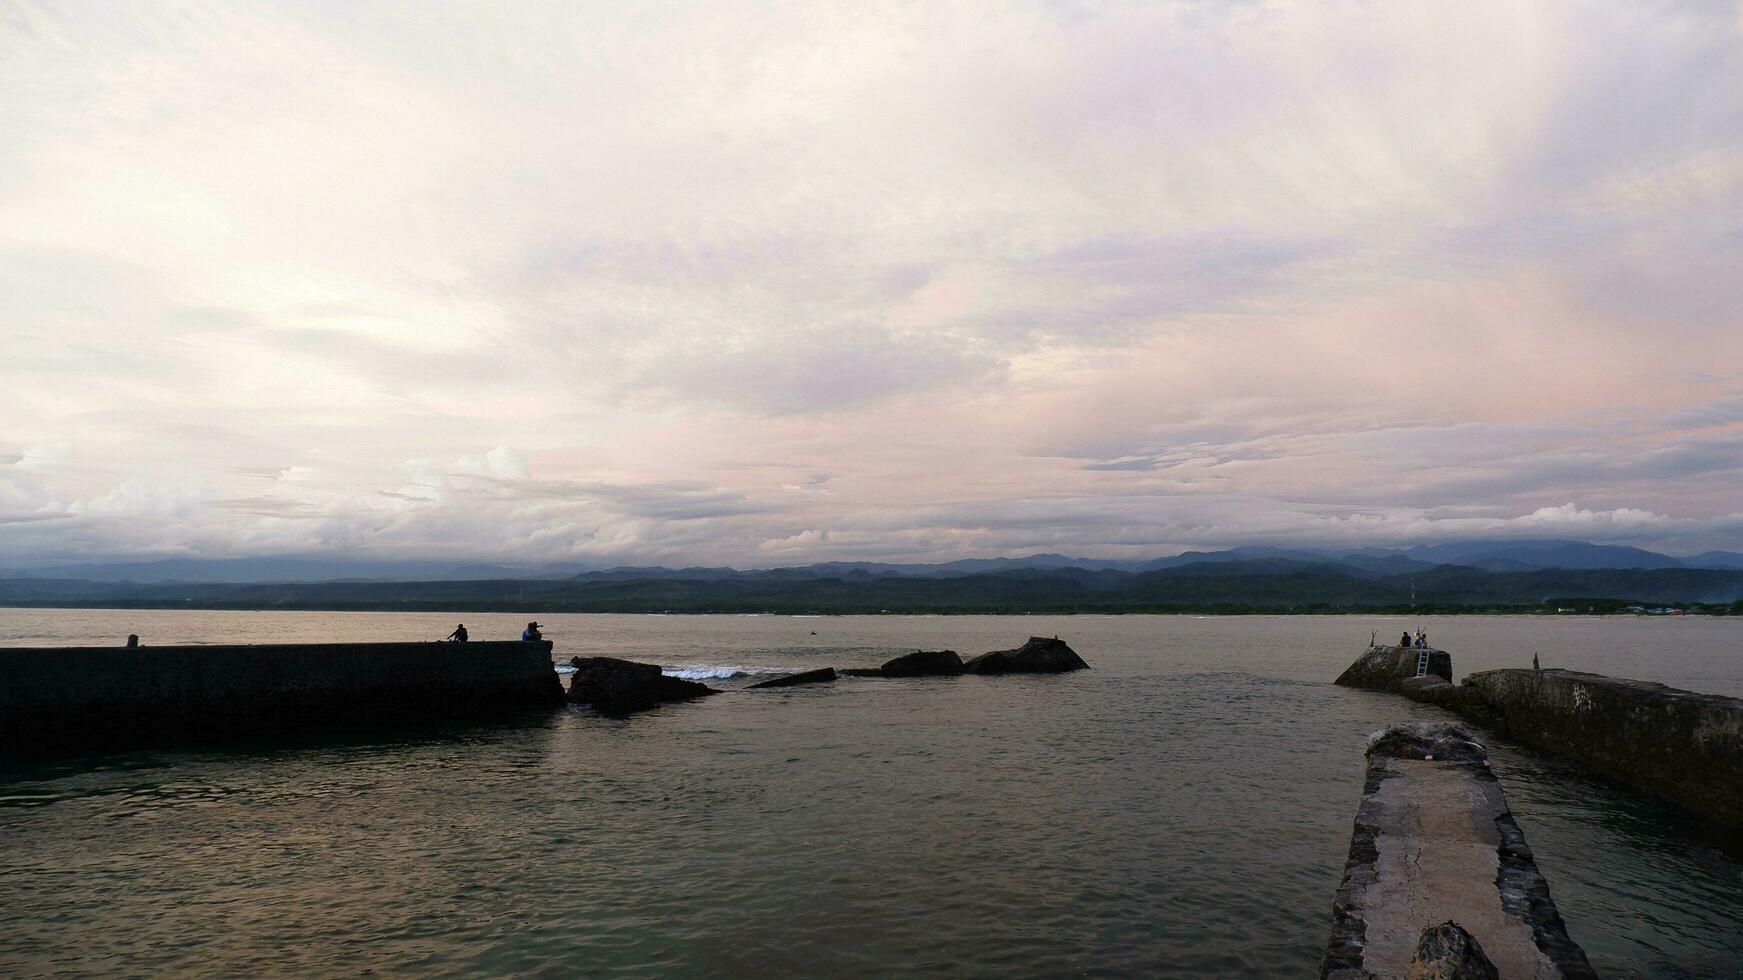 eftermiddag hav se och sjövägg, strand, och korall, solnedgång bakgrund på santolo strand indonesien foto